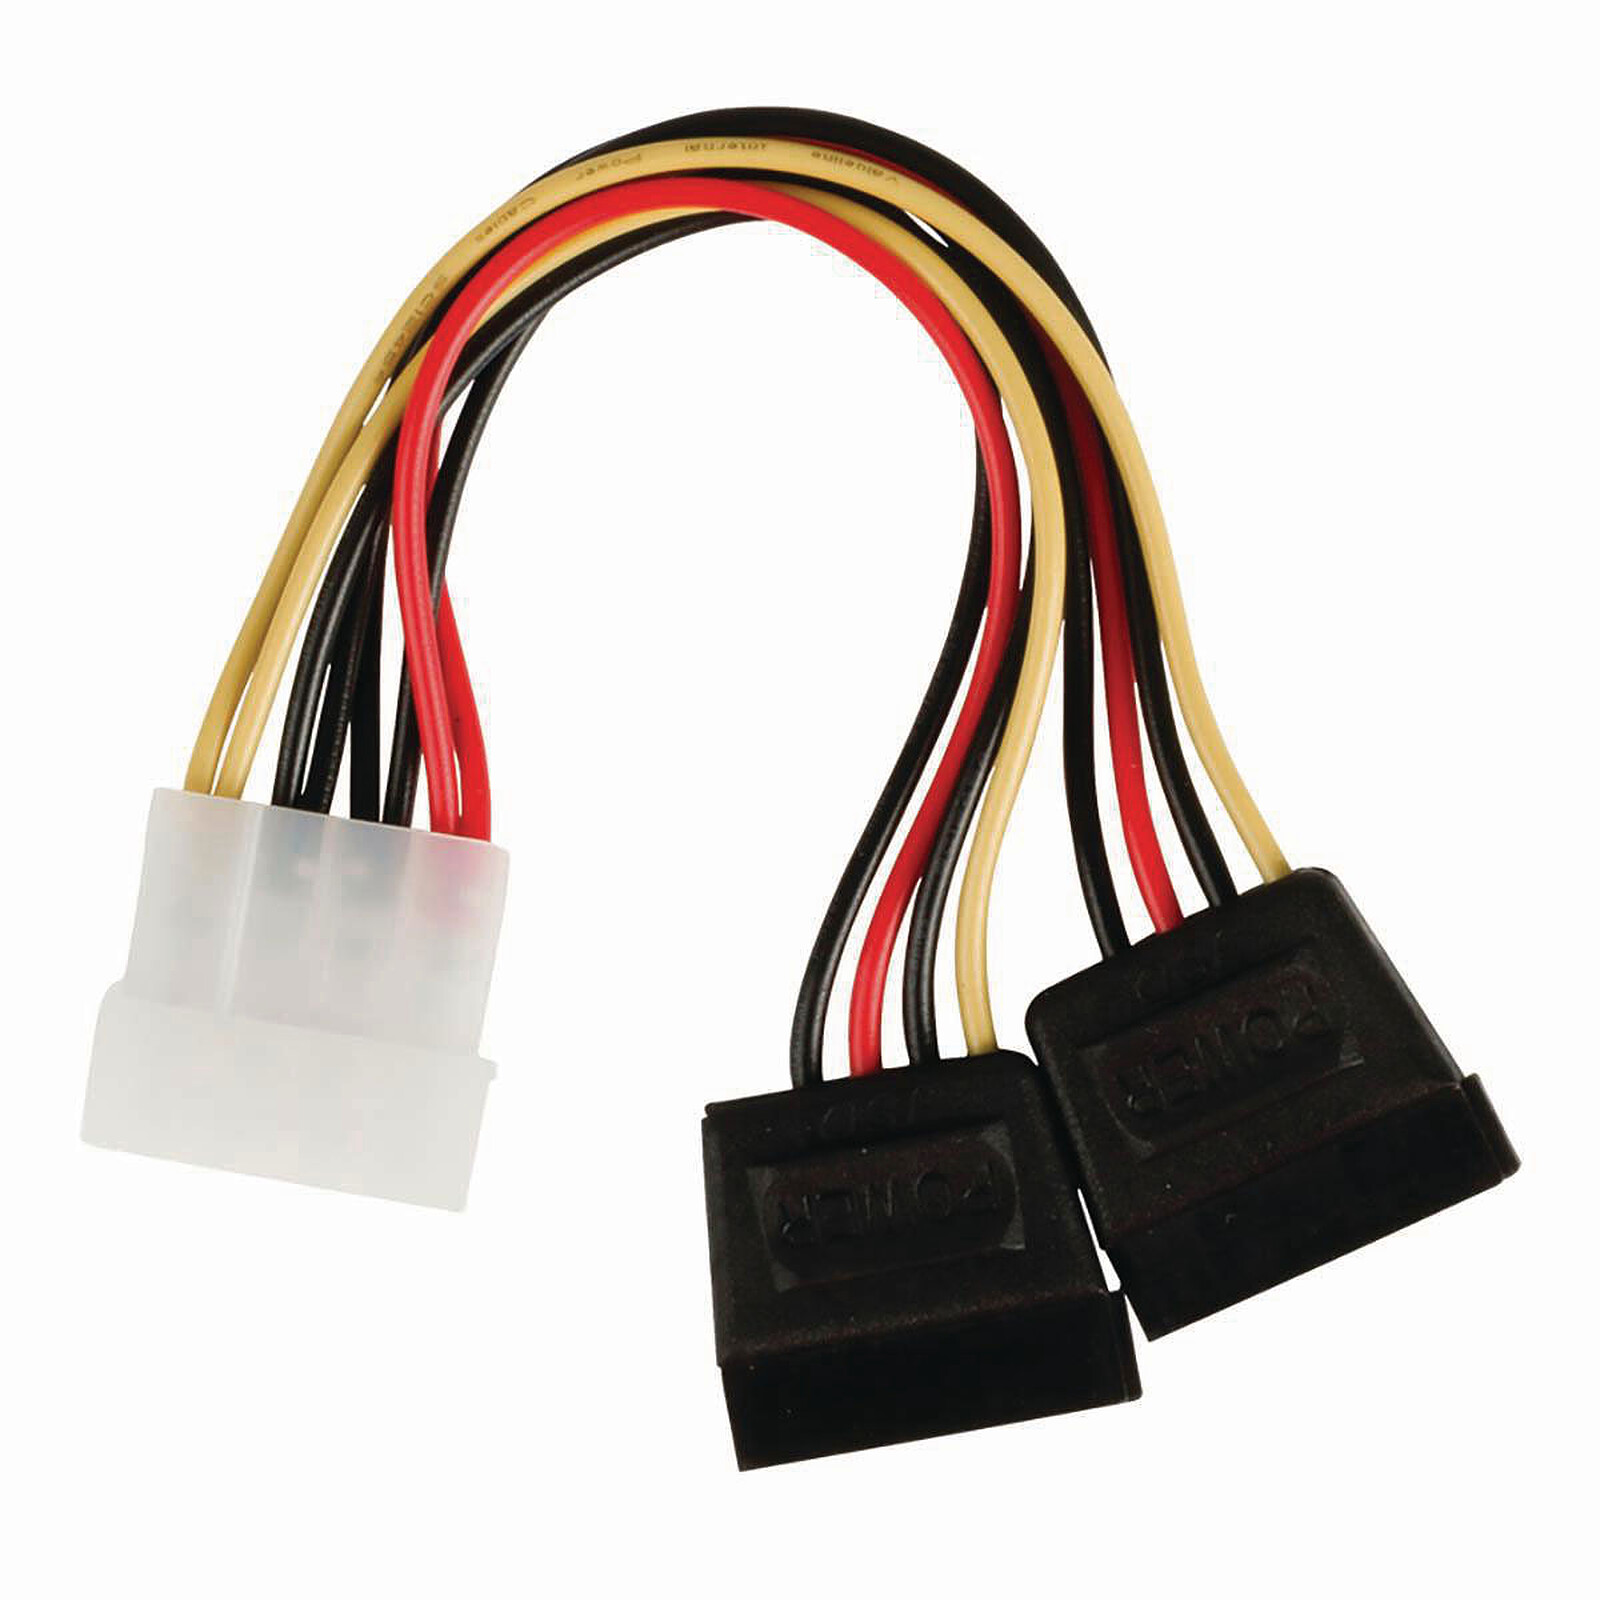 Câble Slim-SATA 2-en-1 avec alimentation Molex (pour lecteur optique slim  ou SSD 1.8'') - Serial ATA - Garantie 3 ans LDLC